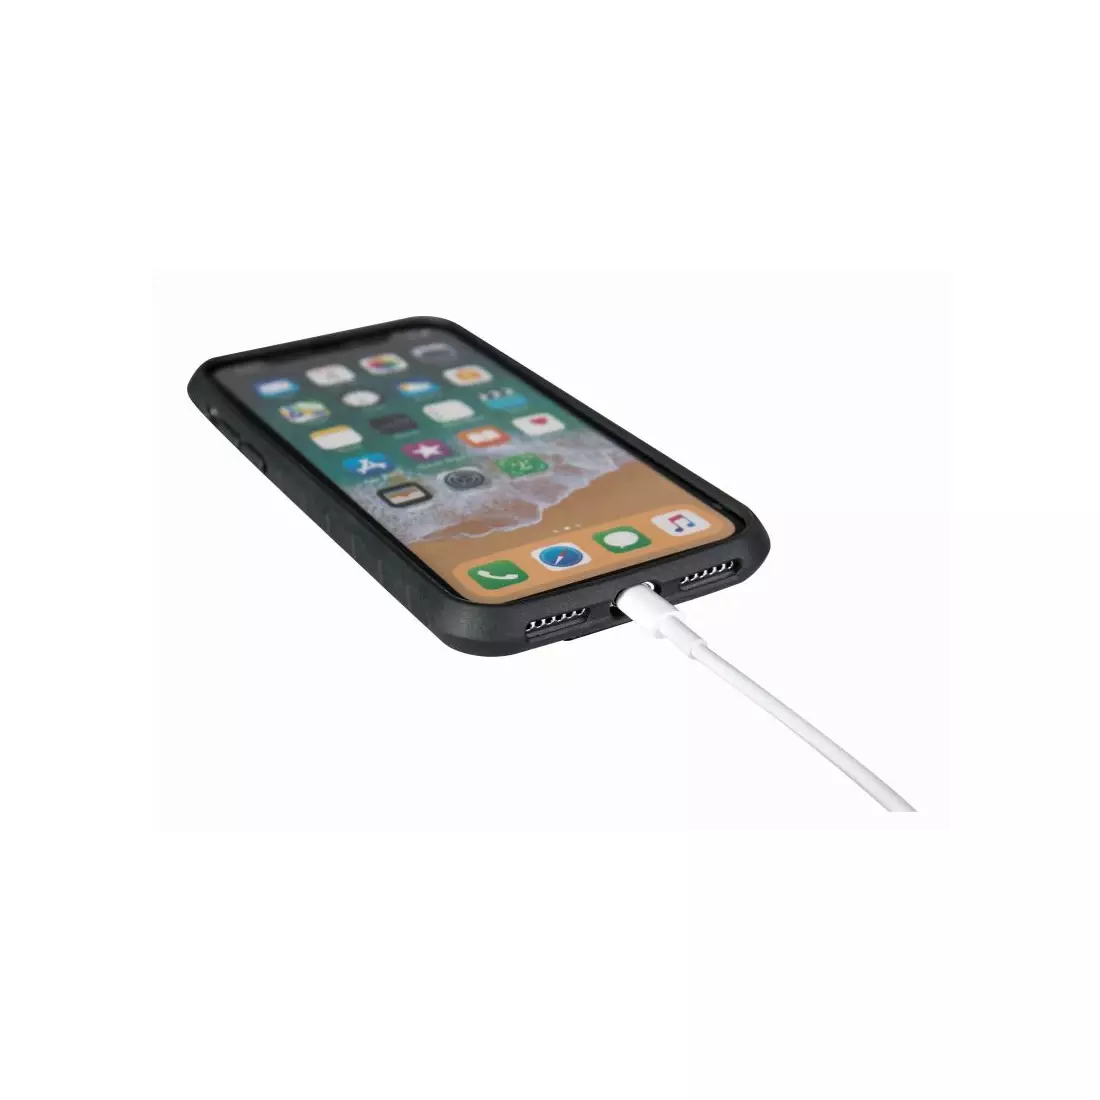 TOPEAK RIDECASE CASE FOR iPHONE Xs MAX T-TT9858BG